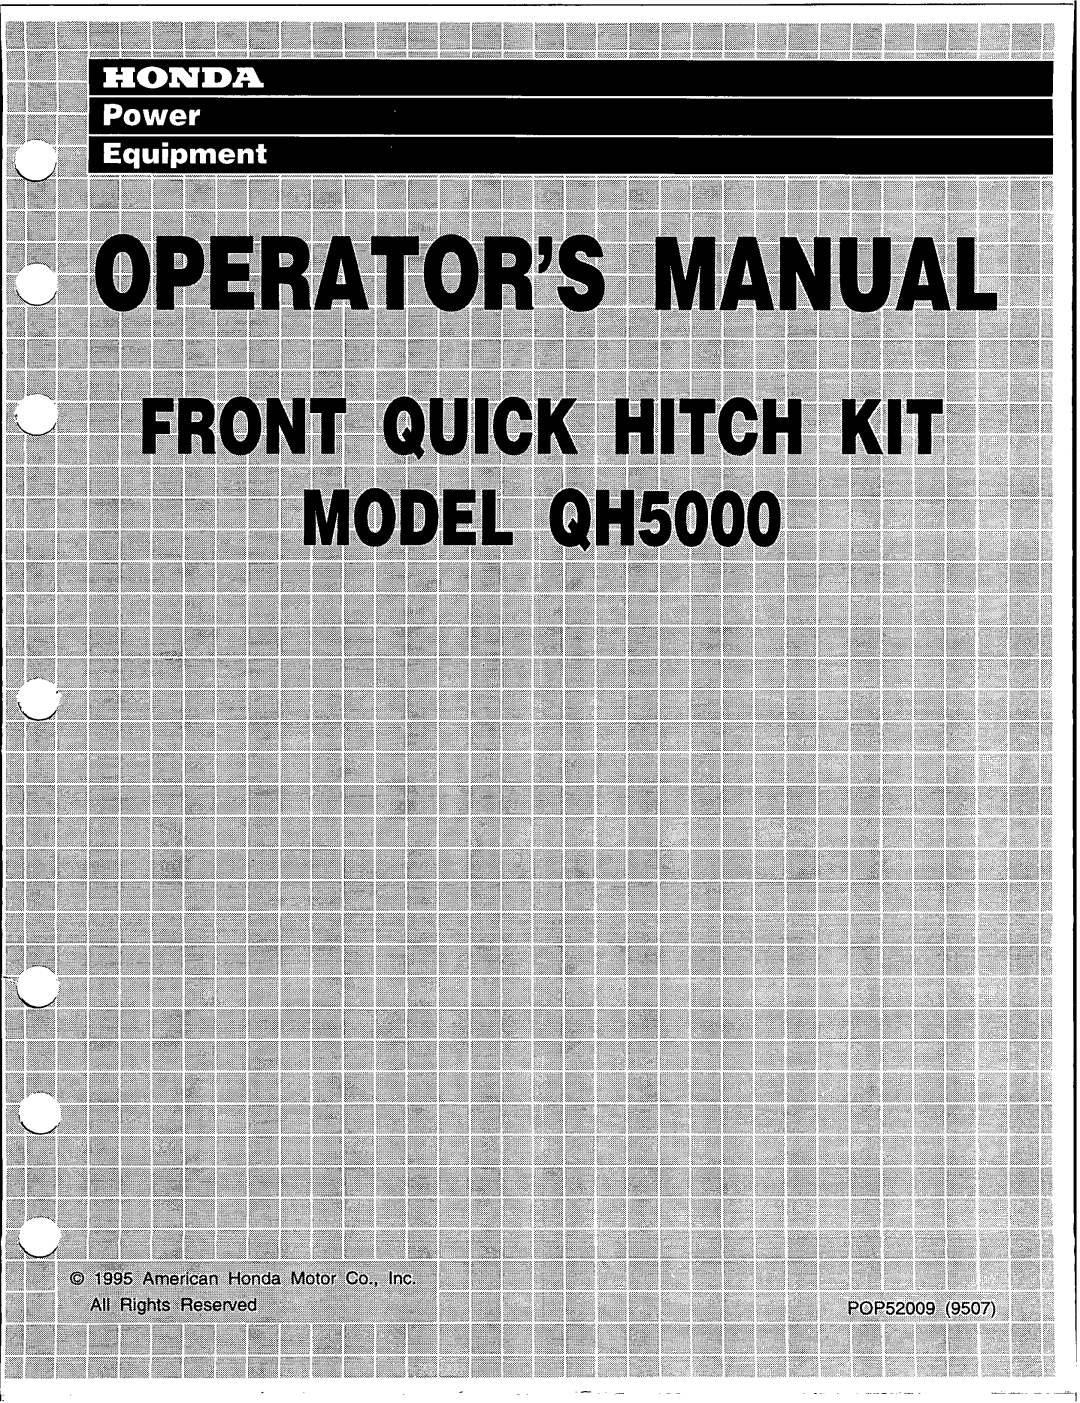 Honda Power Equipment QH5000 manual 